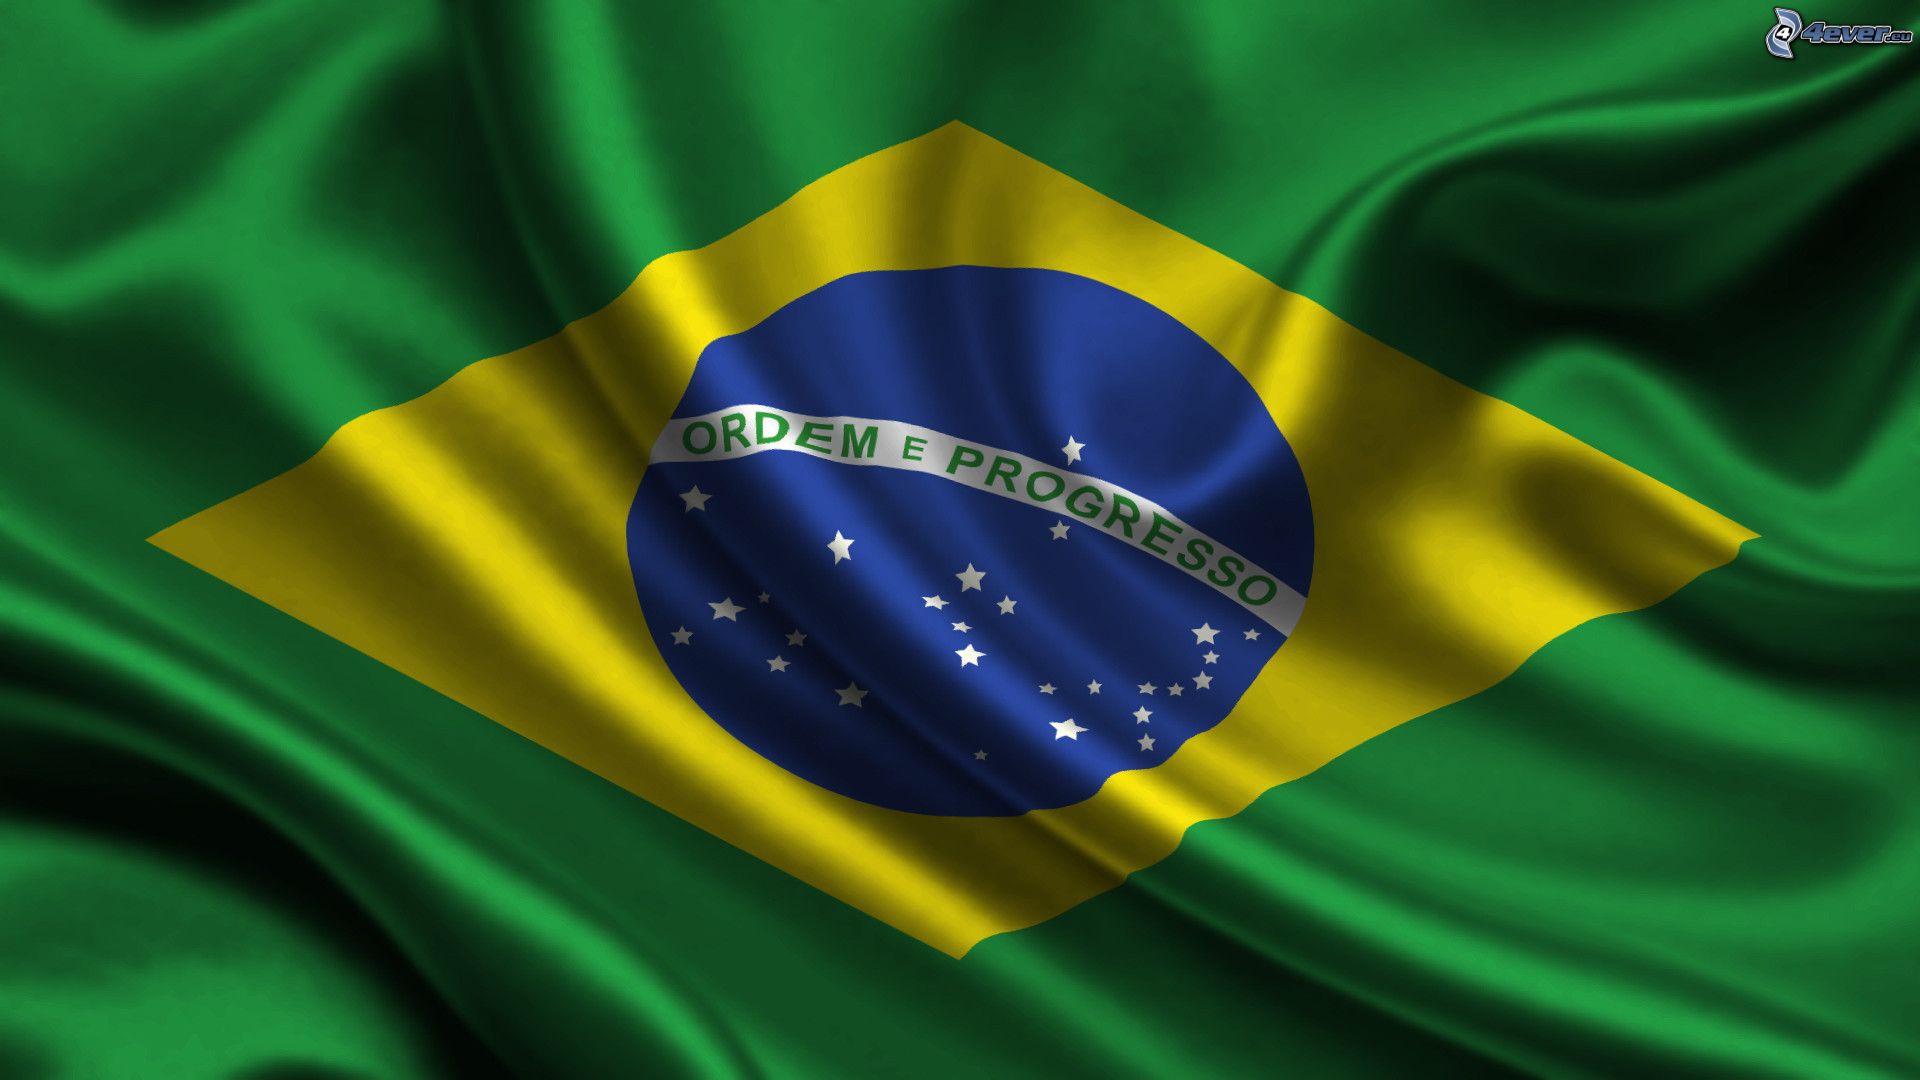 Bandiera del Brasile